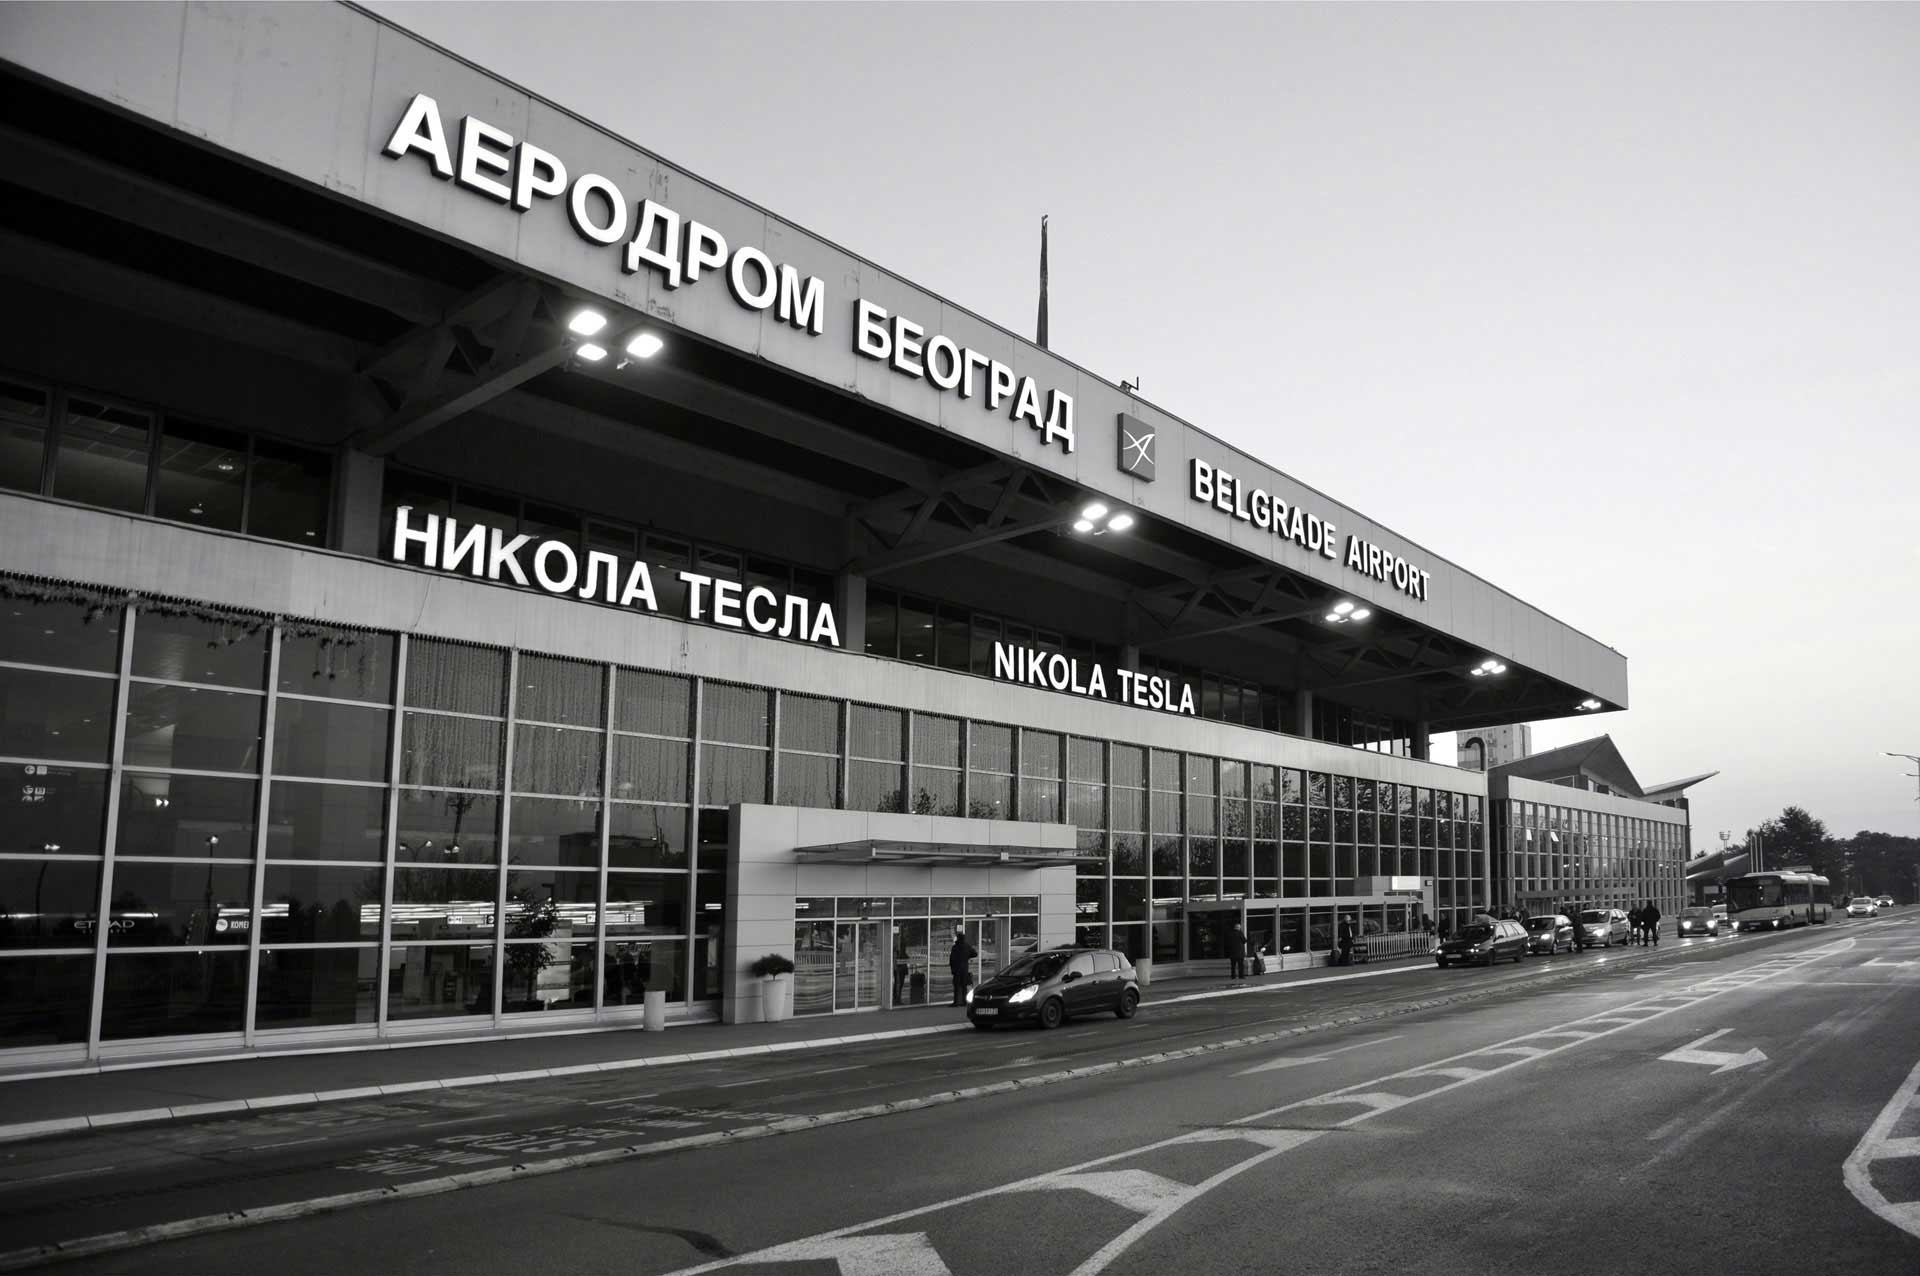 Международные аэропорты сербии: белград никола тесла, ниш
международные аэропорты сербии — путеводитель по сербии